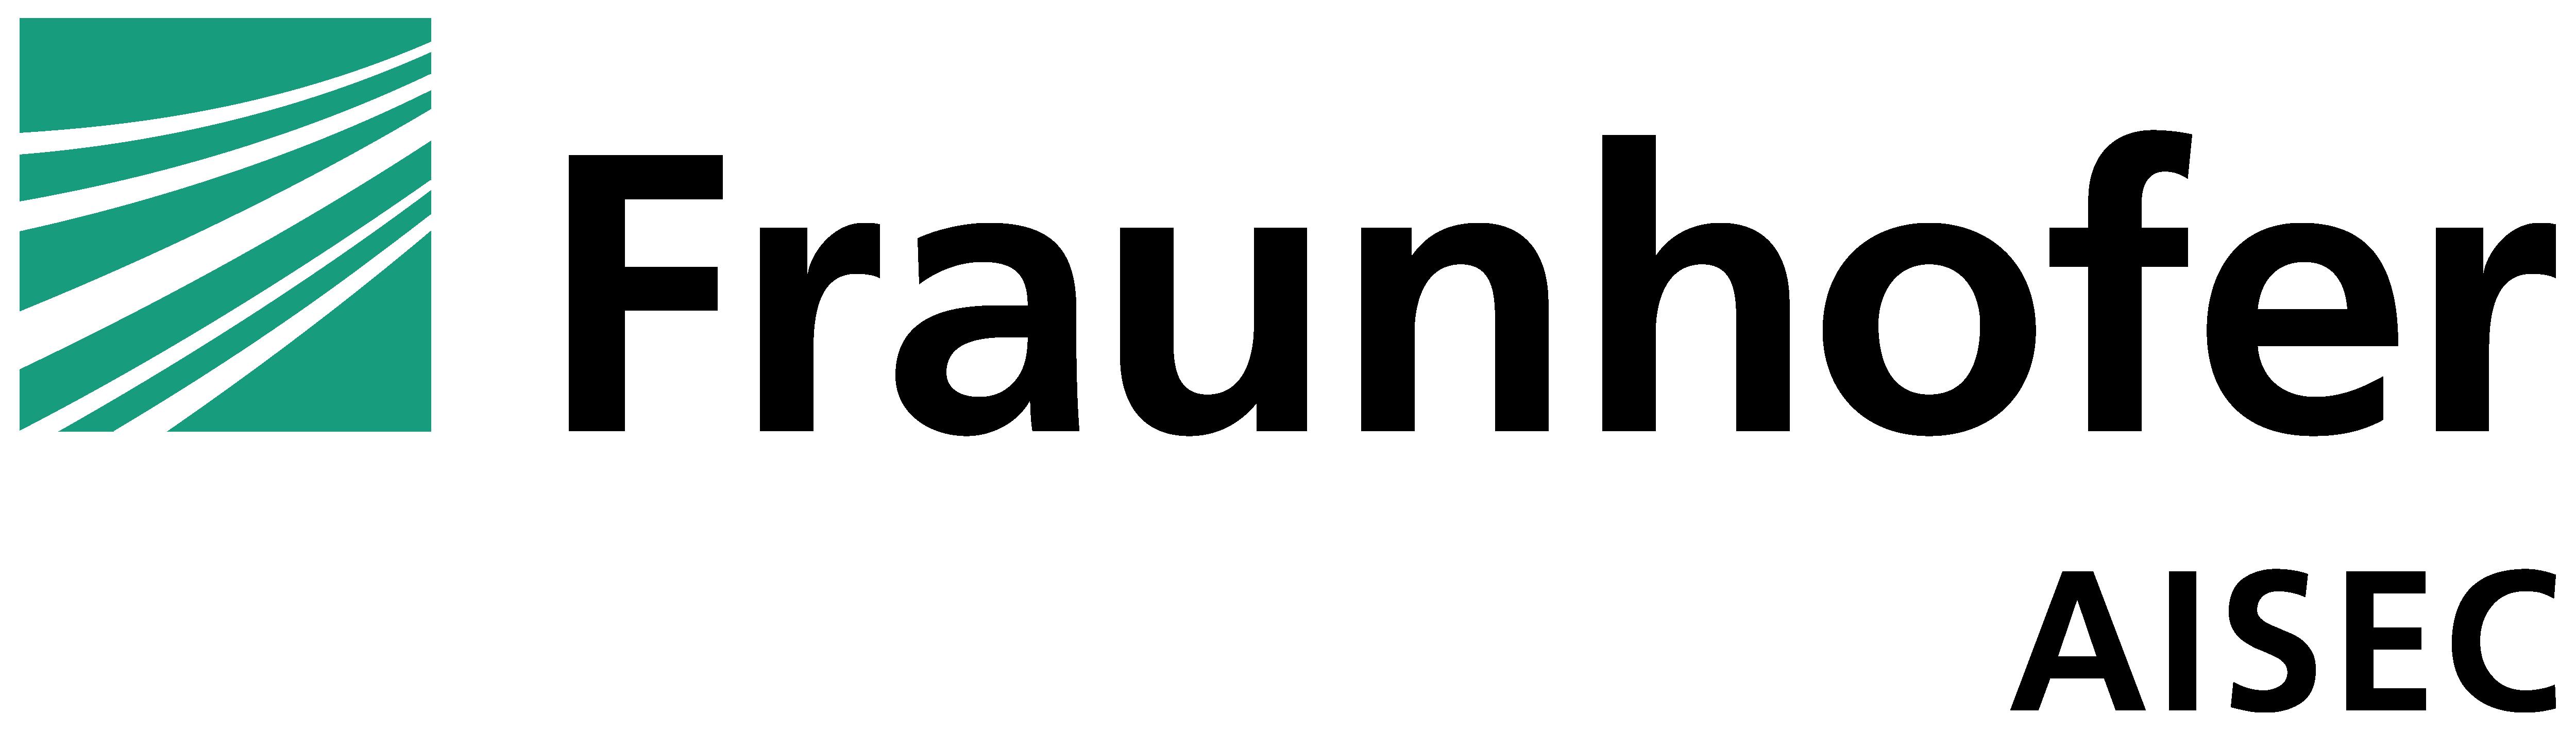 Fraunhofer AISEC Logo